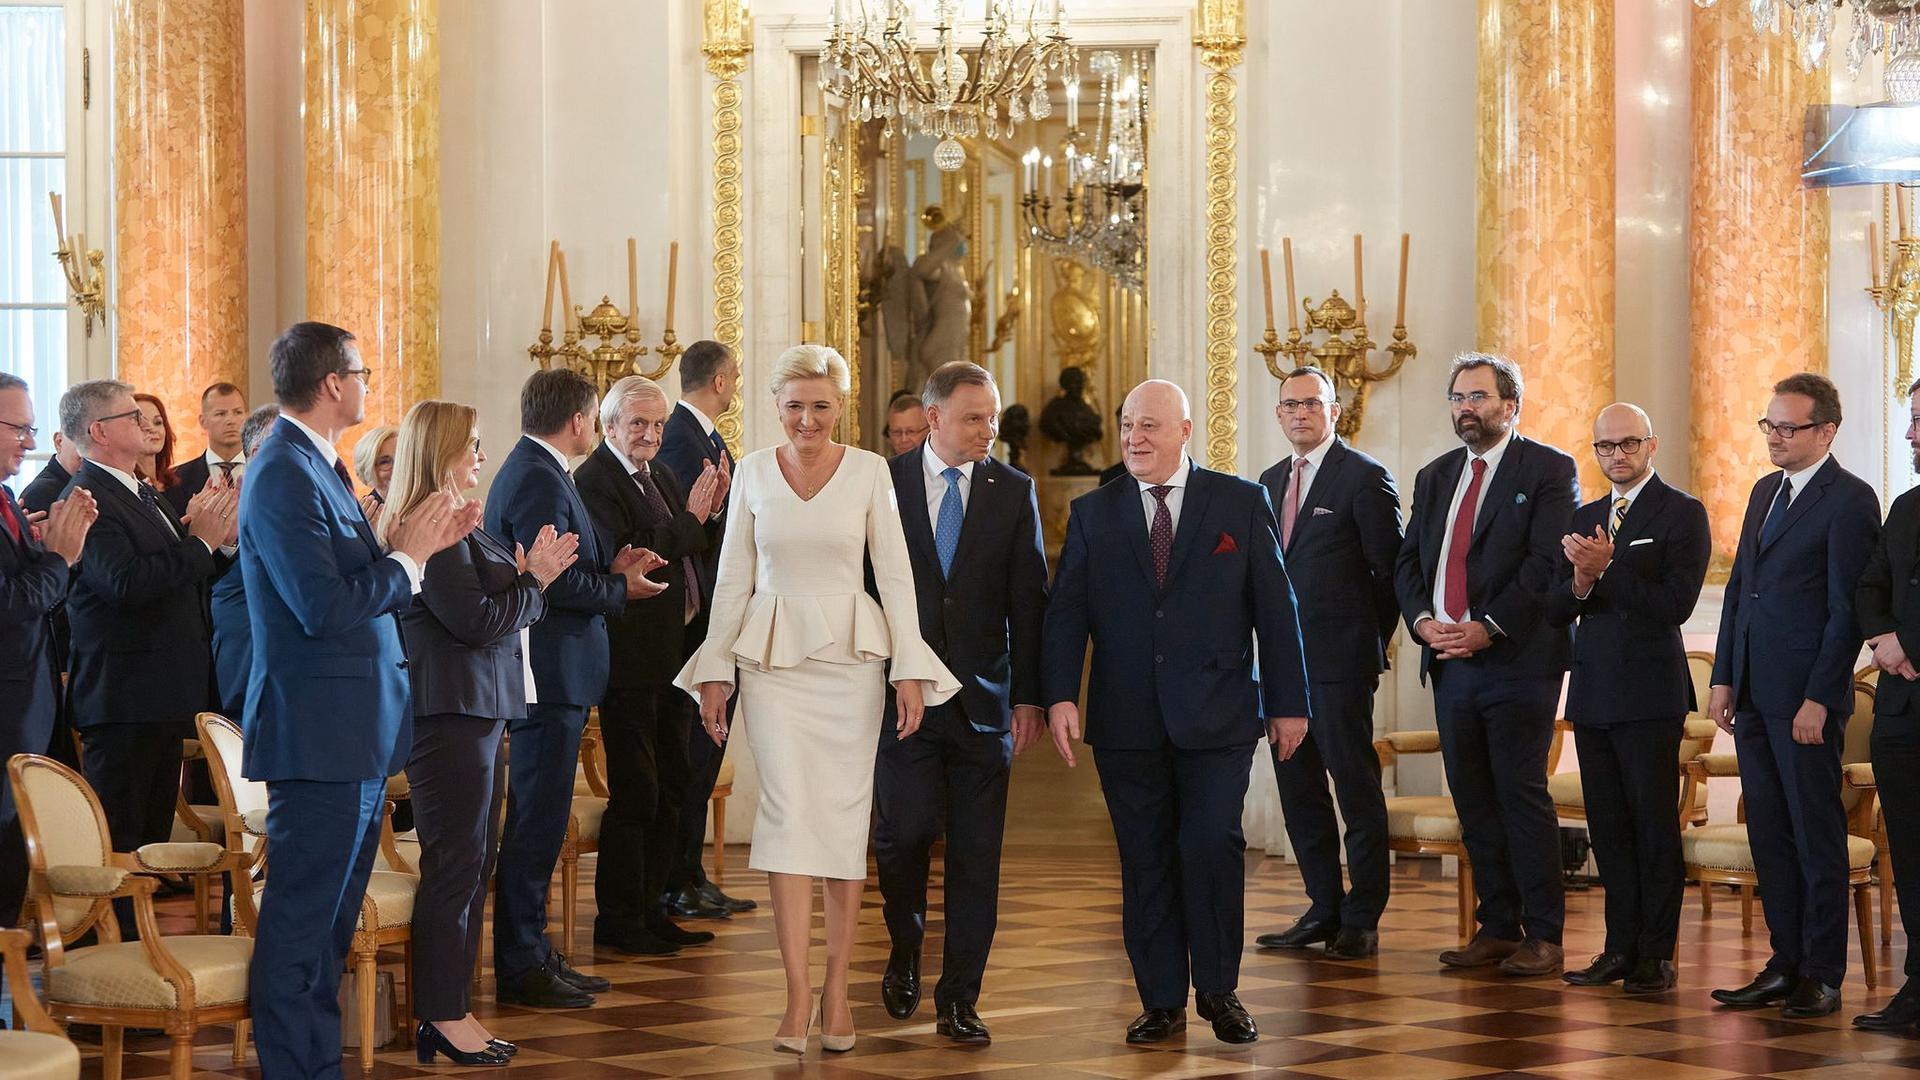 Andrzej Duda (M,r), Präsident von Polen, und seine Frau Agata Kornhauser-Duda (M,l), im Königlichen Schloss zur Übergabezeremonie nach der Präsidentenwahl.